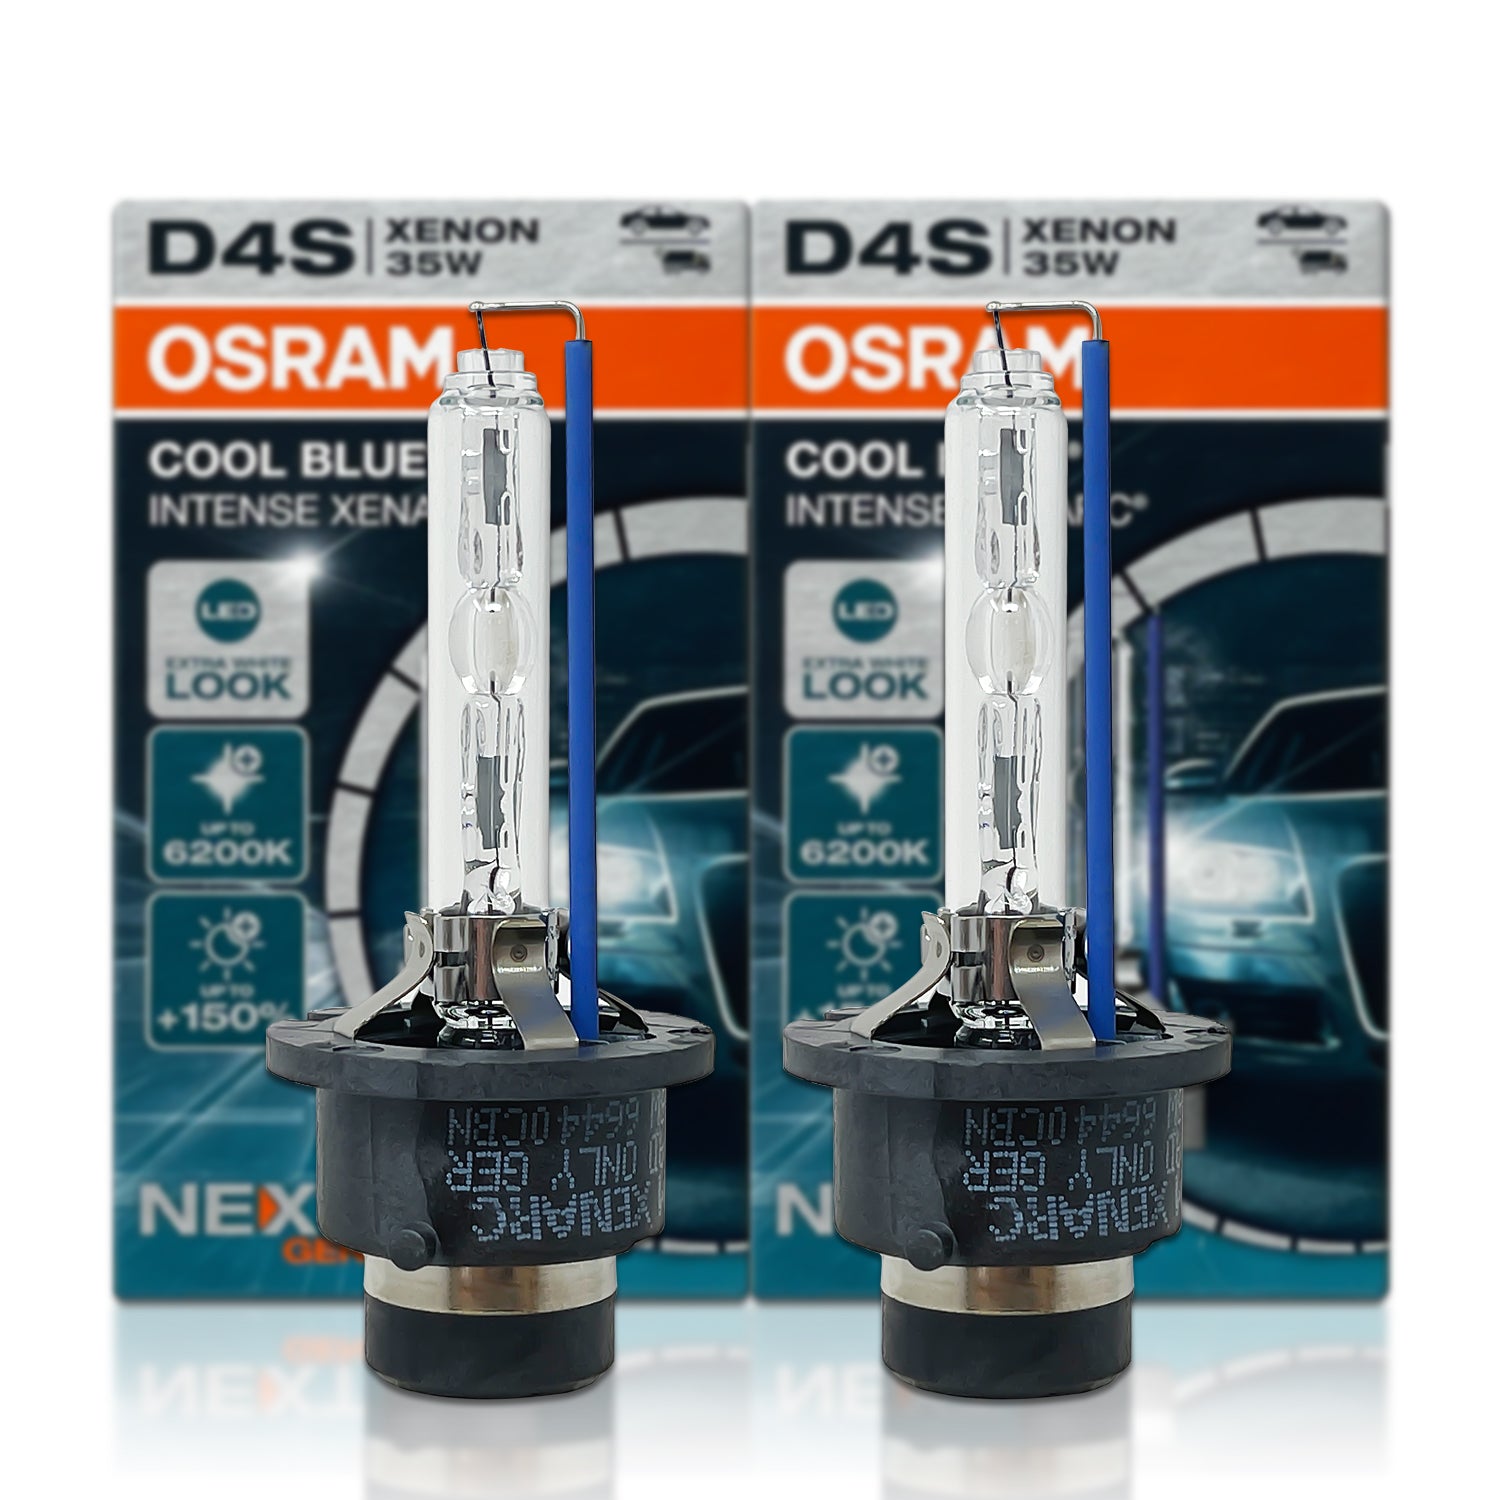 D4S OSRAM Xenon HID Bulbs, 66440CBN